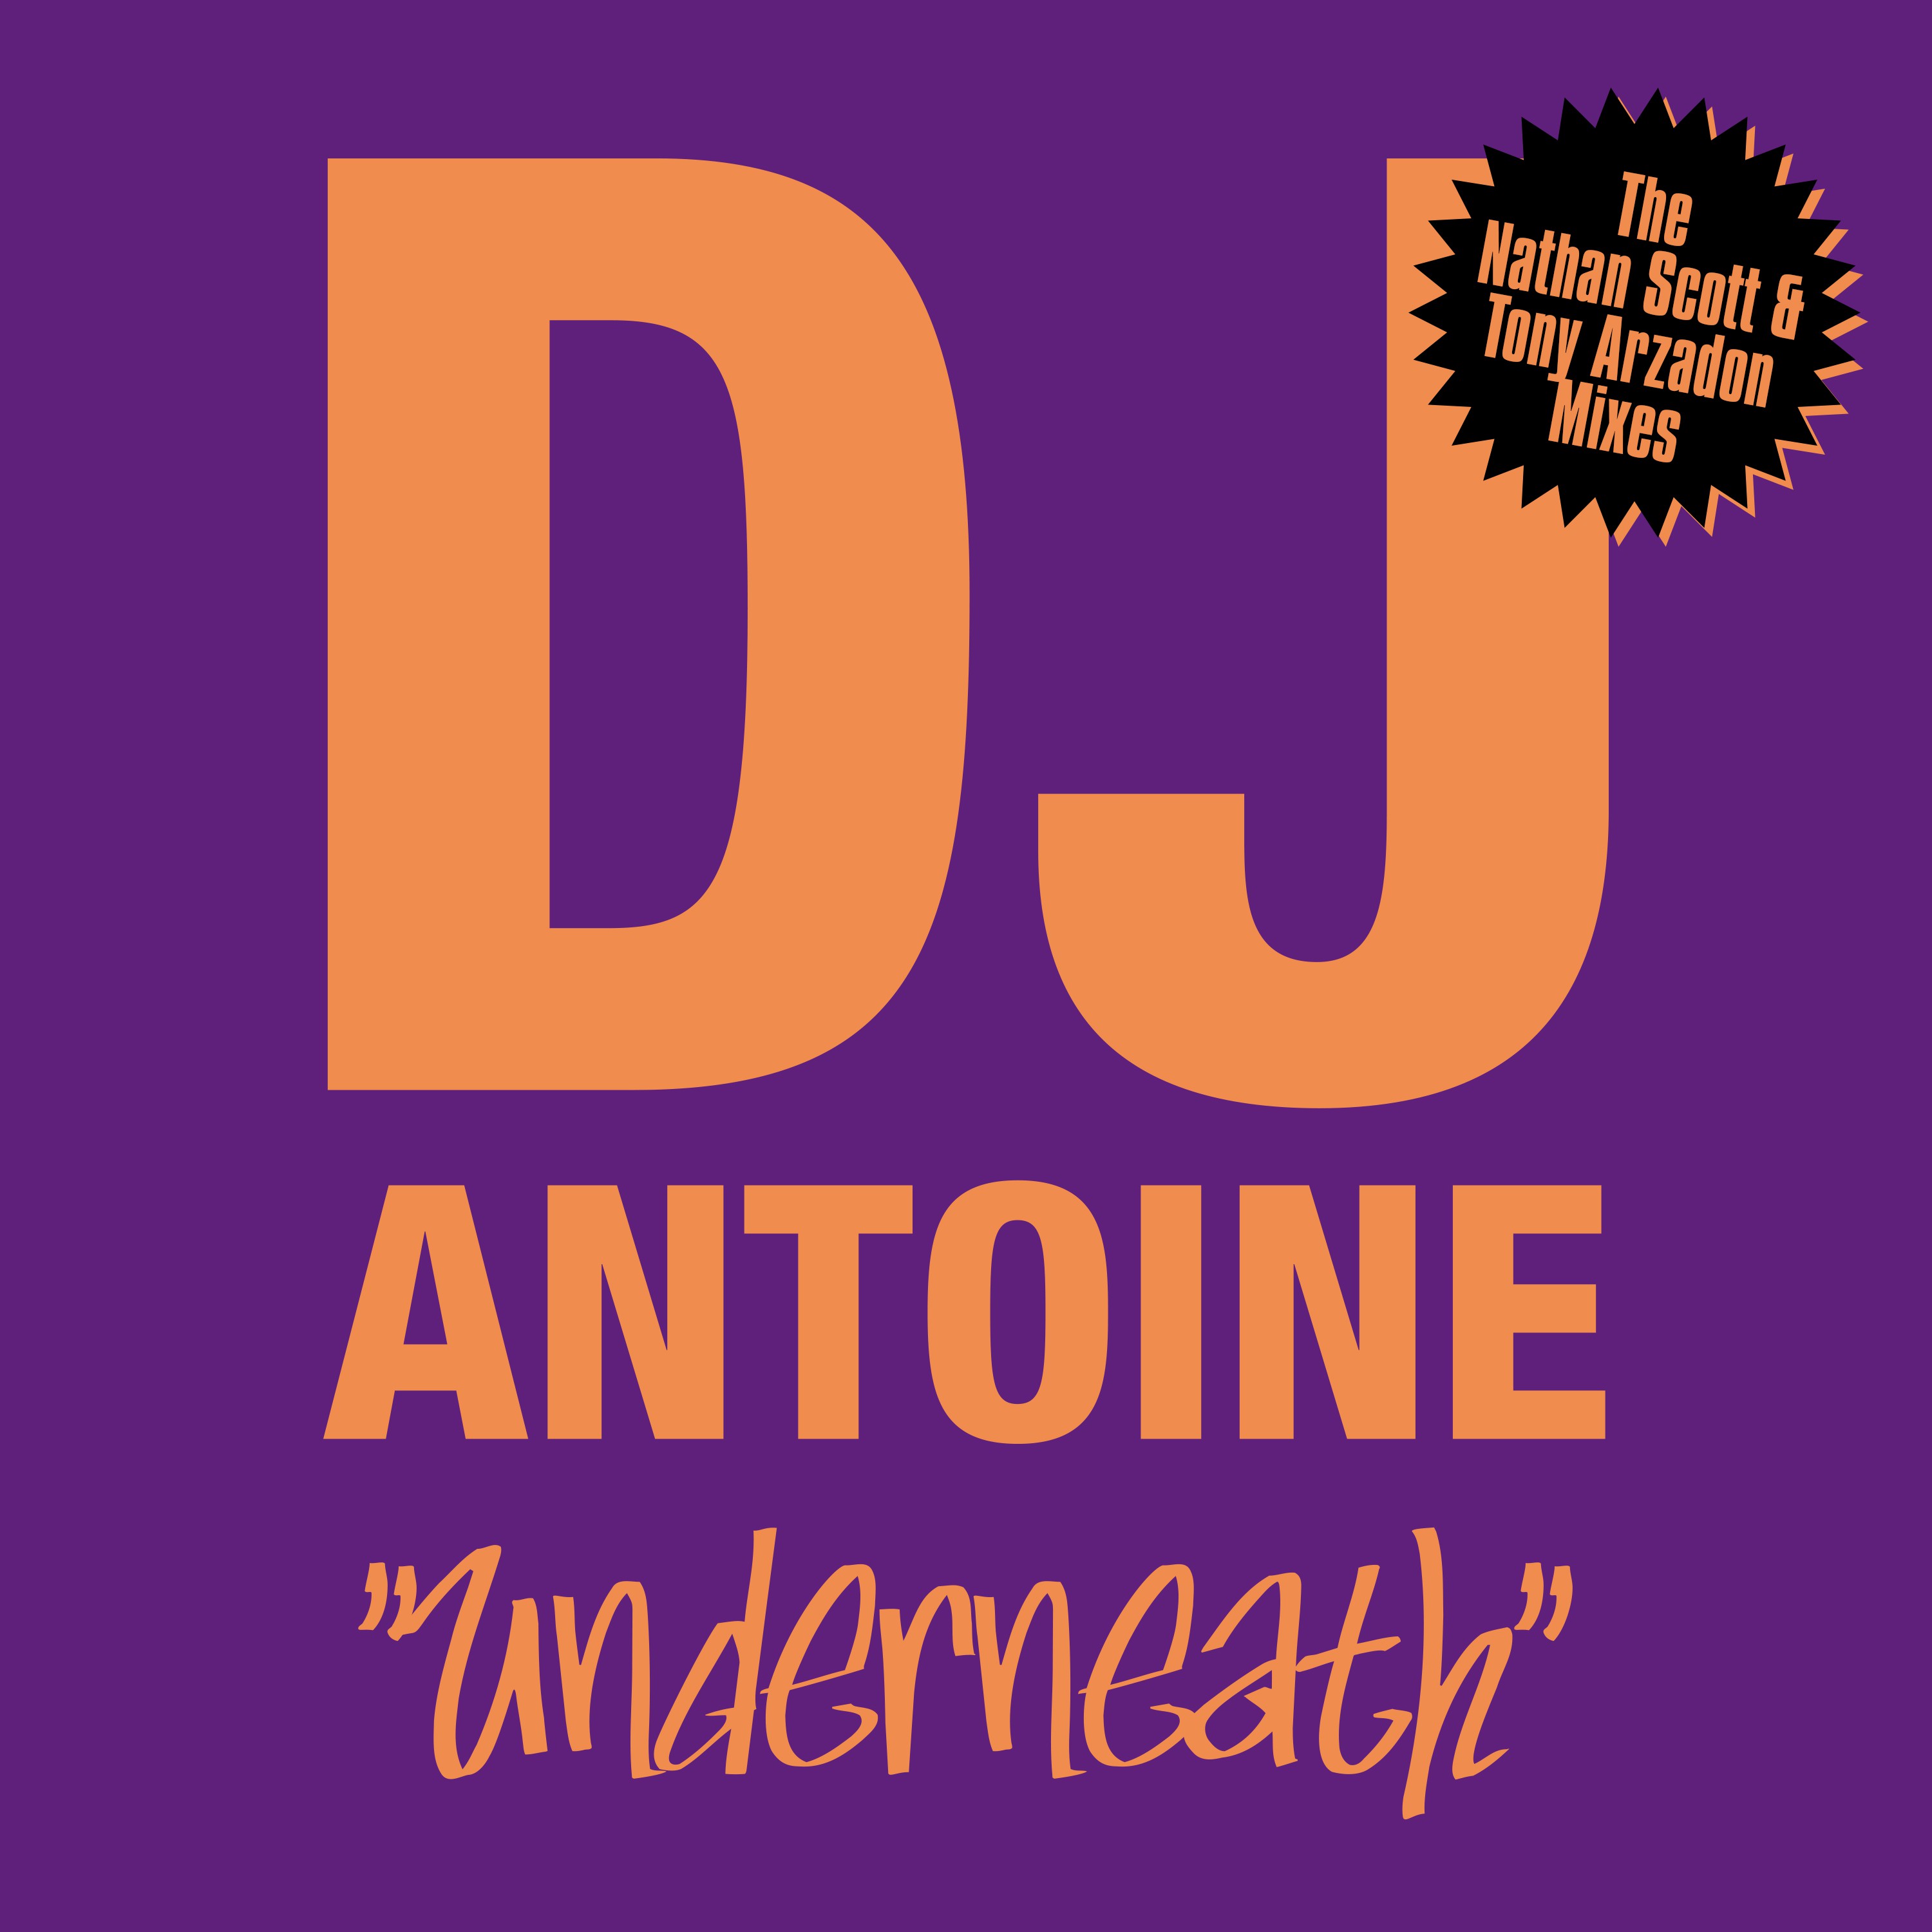 Underneath (The Nathan Scott & Tony Arzadon Remixes)